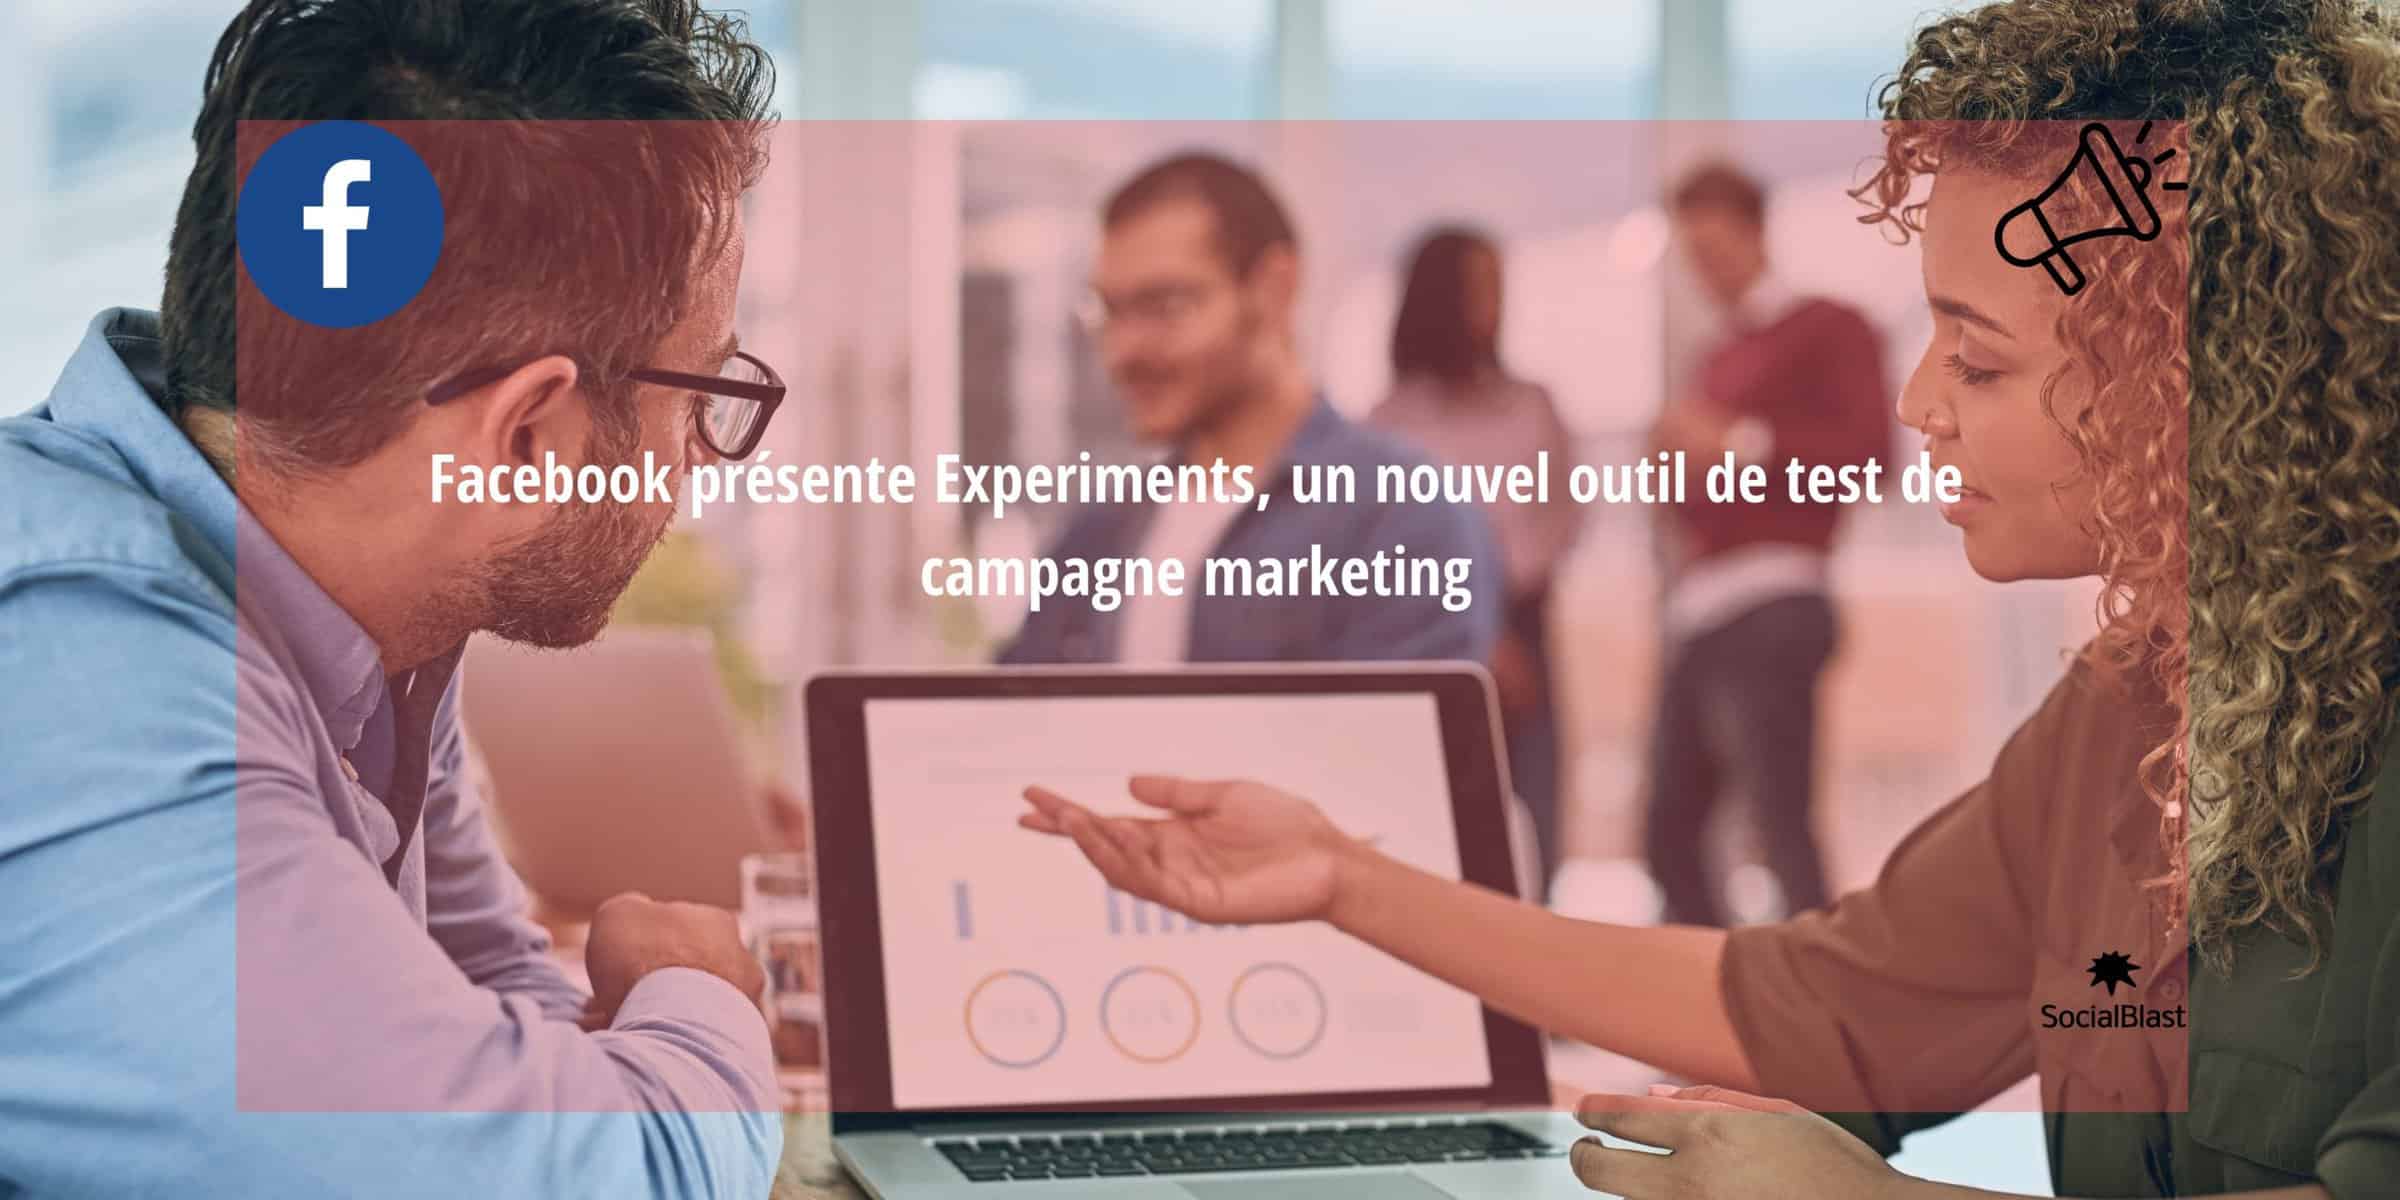 Facebook esittelee Experimentsin, uuden markkinointikampanjoiden testaustyökalun